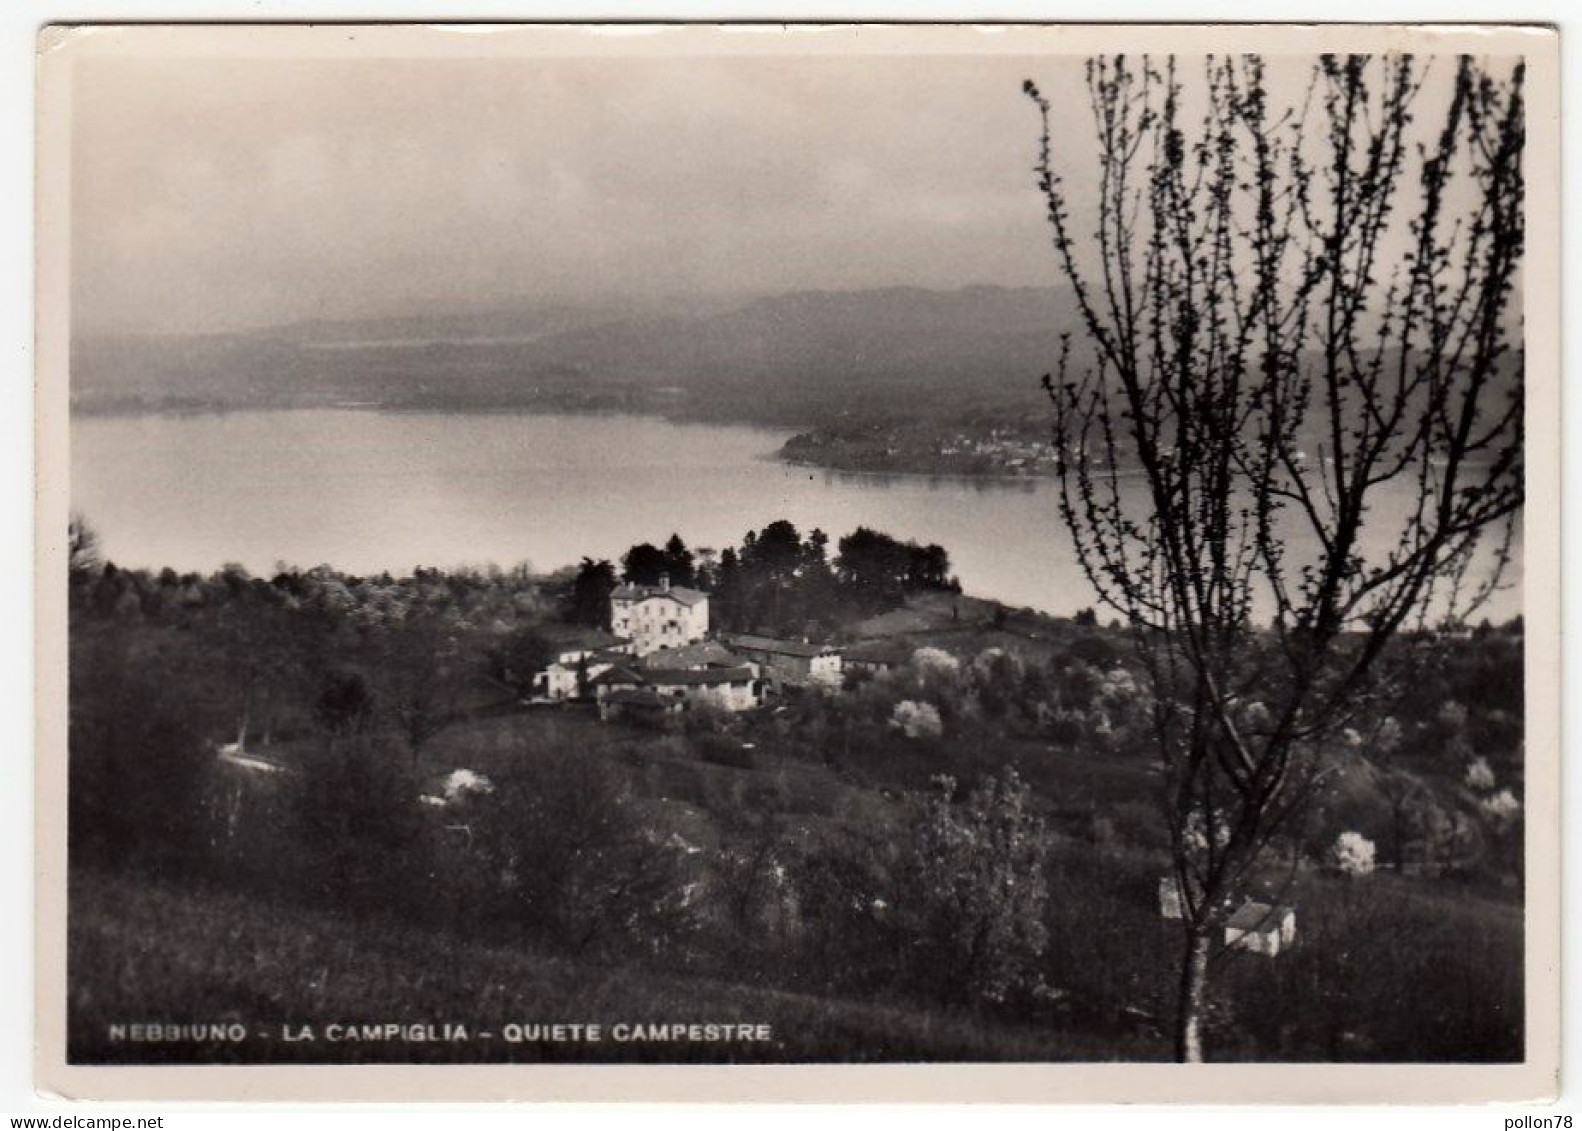 NEBBIUNO - LA CAMPIGLIA - QUIETE CAMPESTRE - NOVARA - 1953 - Novara